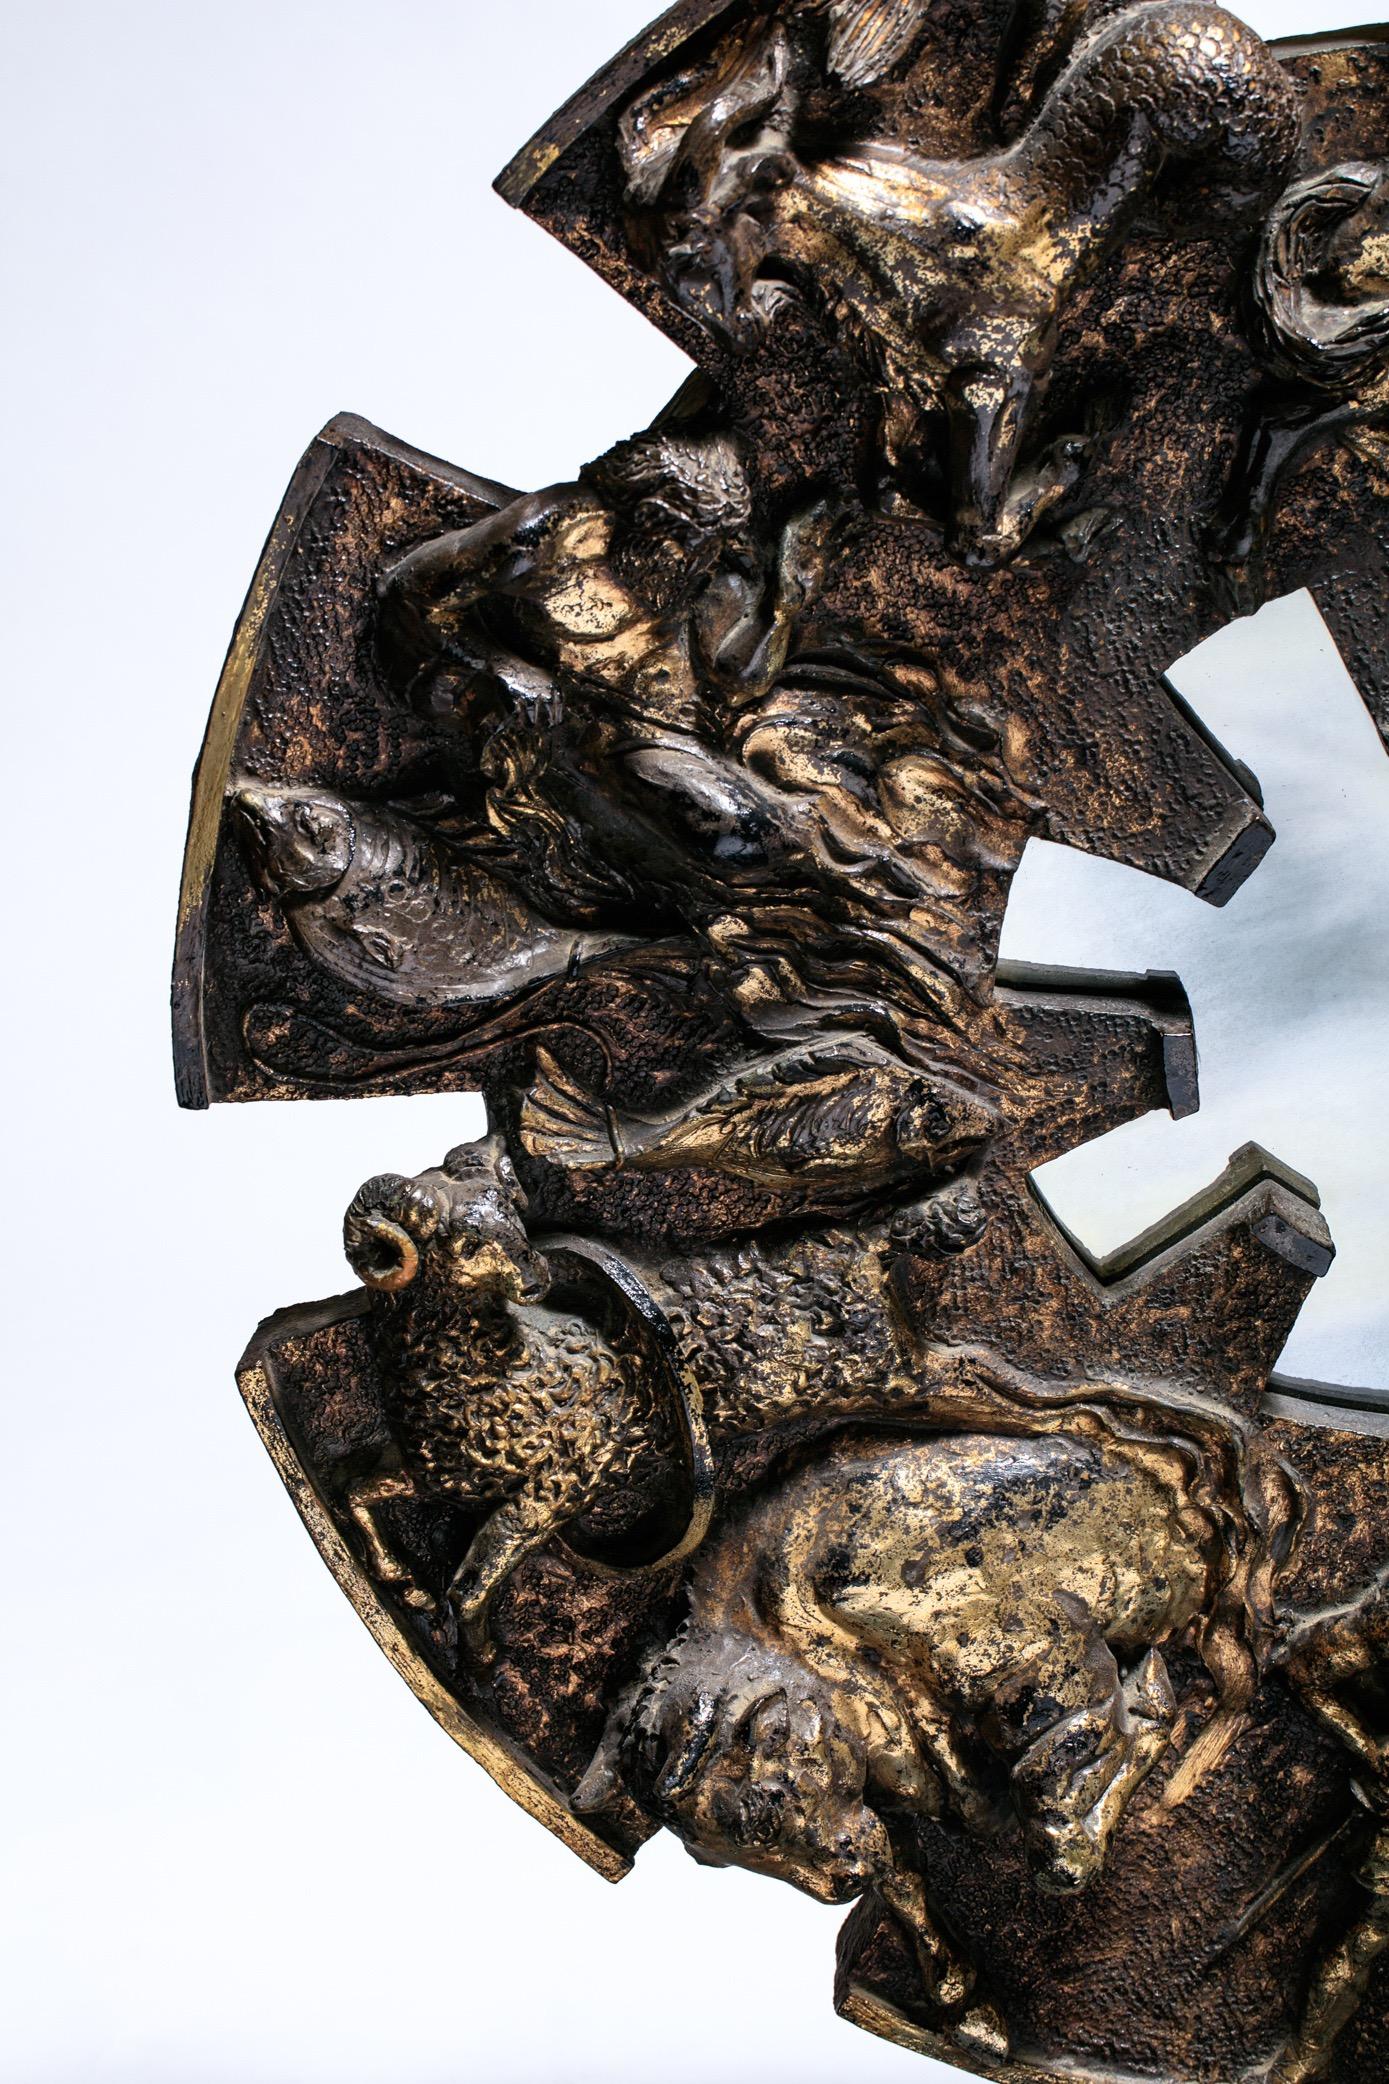 Miroir Zodiac en résine de style brutaliste des années 1970 avec finition patinée bronze. Figures du Zodiac stylisées sur une forme en étoile avec un centre en miroir vieilli. La magnifique finition en bronze a beaucoup de profondeur et de caractère